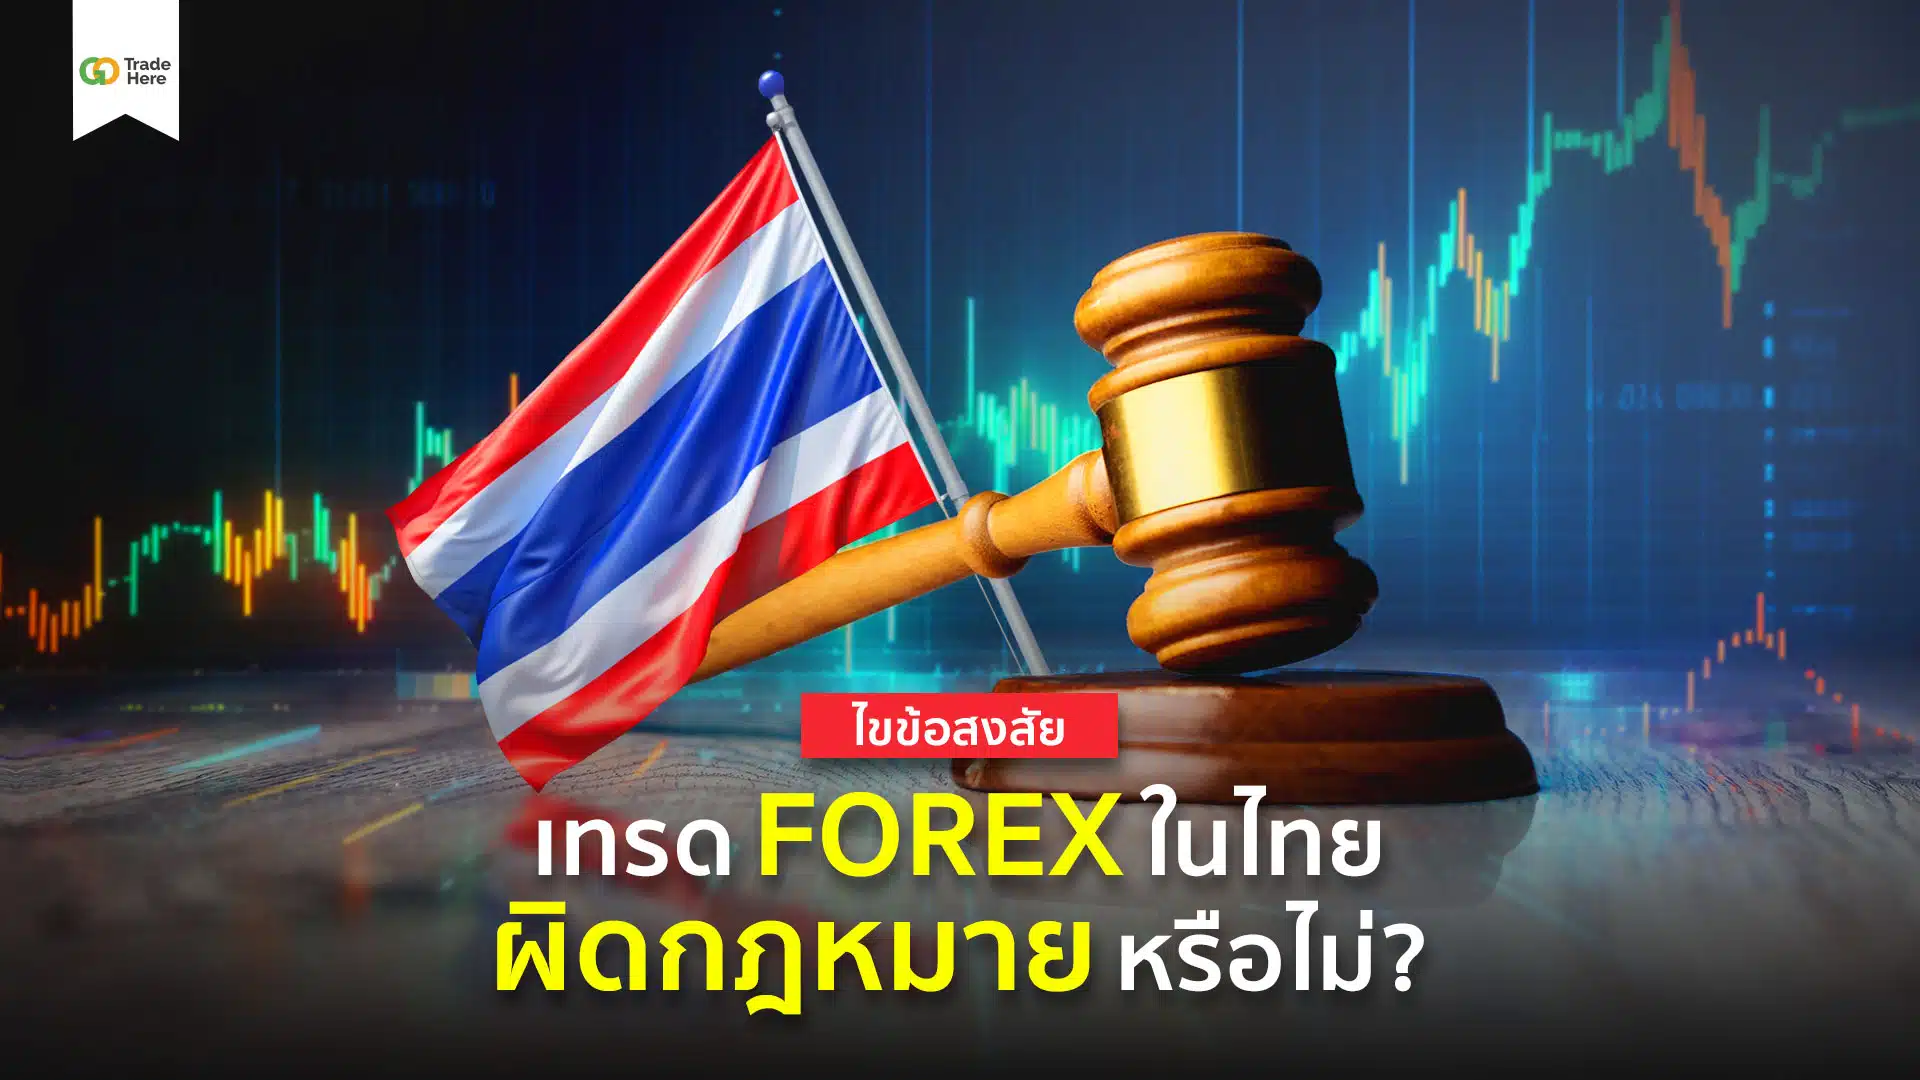 ไขข้อสงสัย! เทรด Forex ผิดกฎหมายหรือไม่ในประเทศไทย?